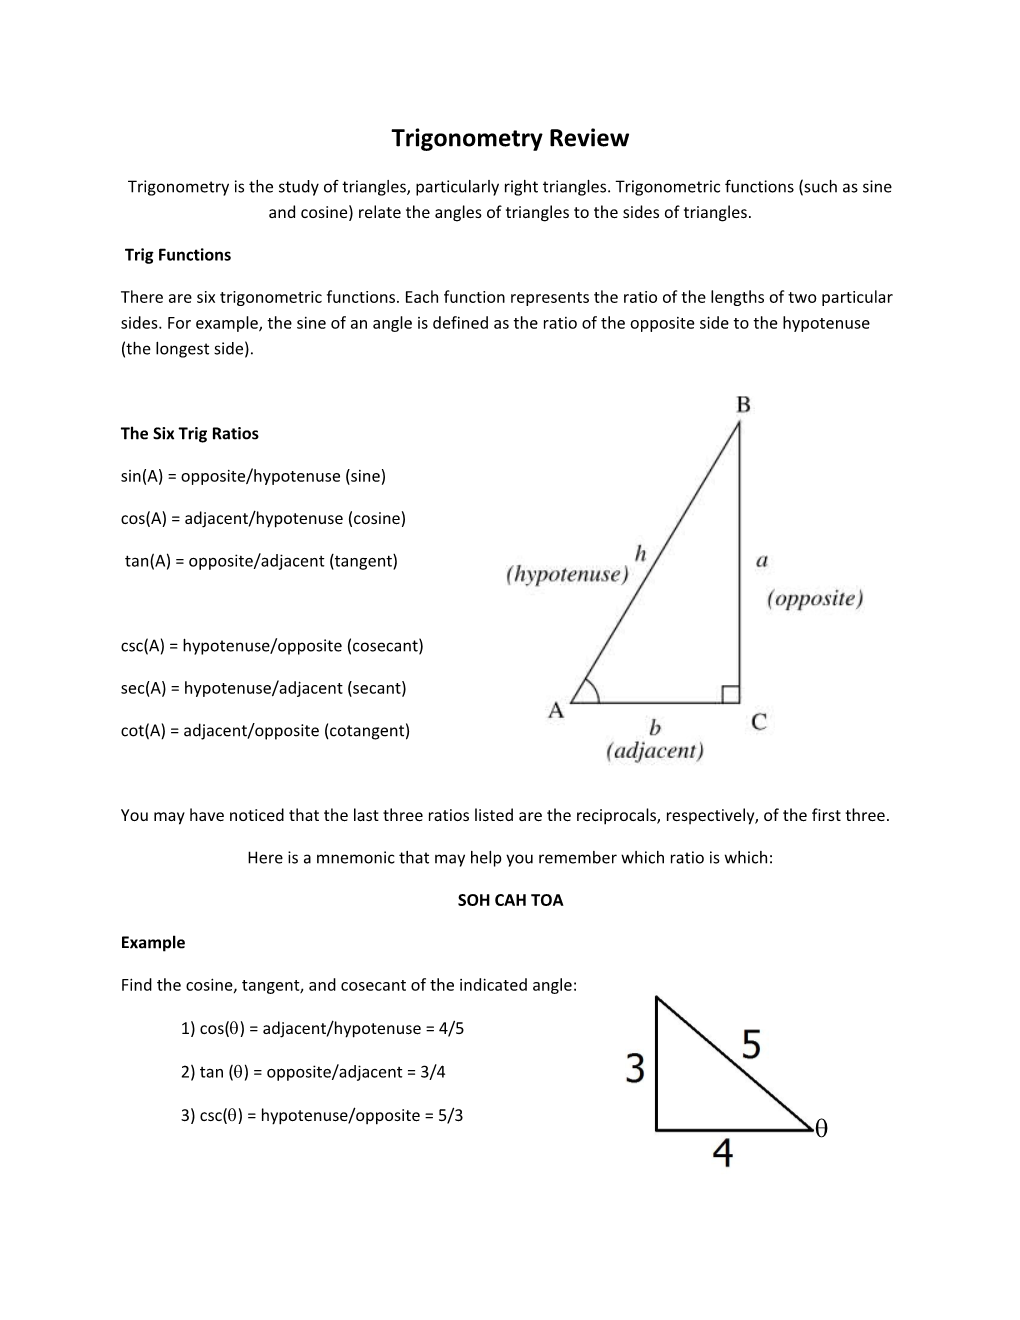 Trigonometry Review